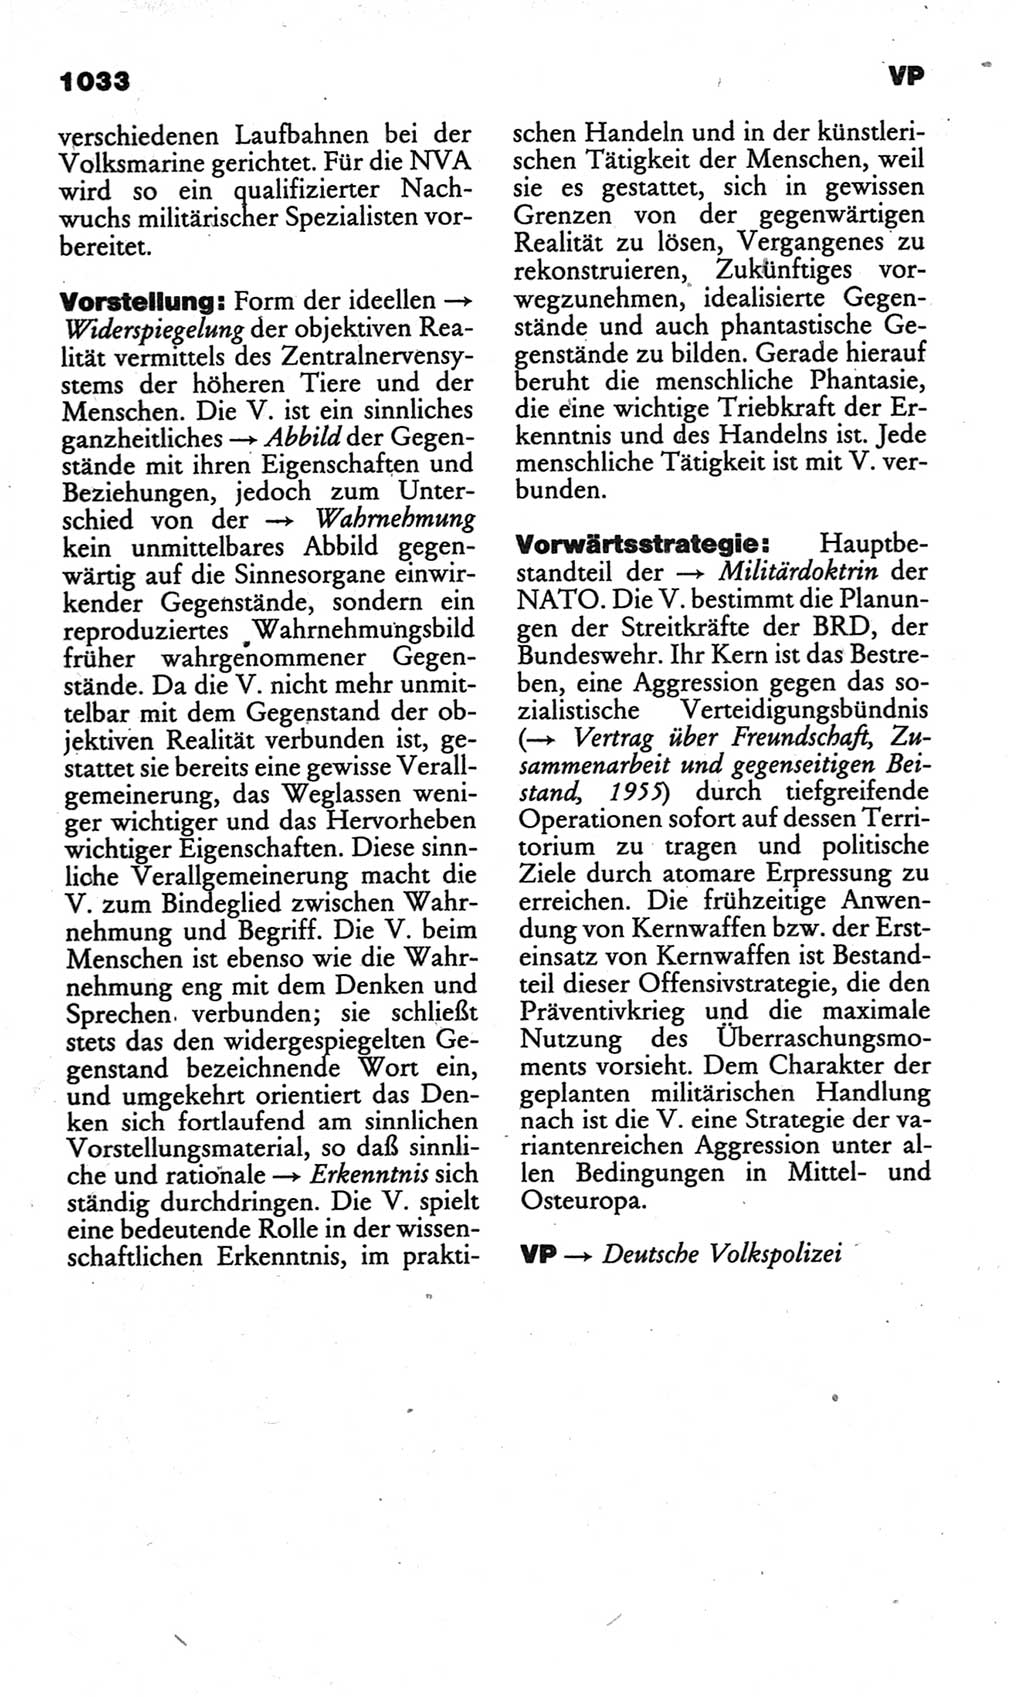 Kleines politisches Wörterbuch [Deutsche Demokratische Republik (DDR)] 1986, Seite 1033 (Kl. pol. Wb. DDR 1986, S. 1033)